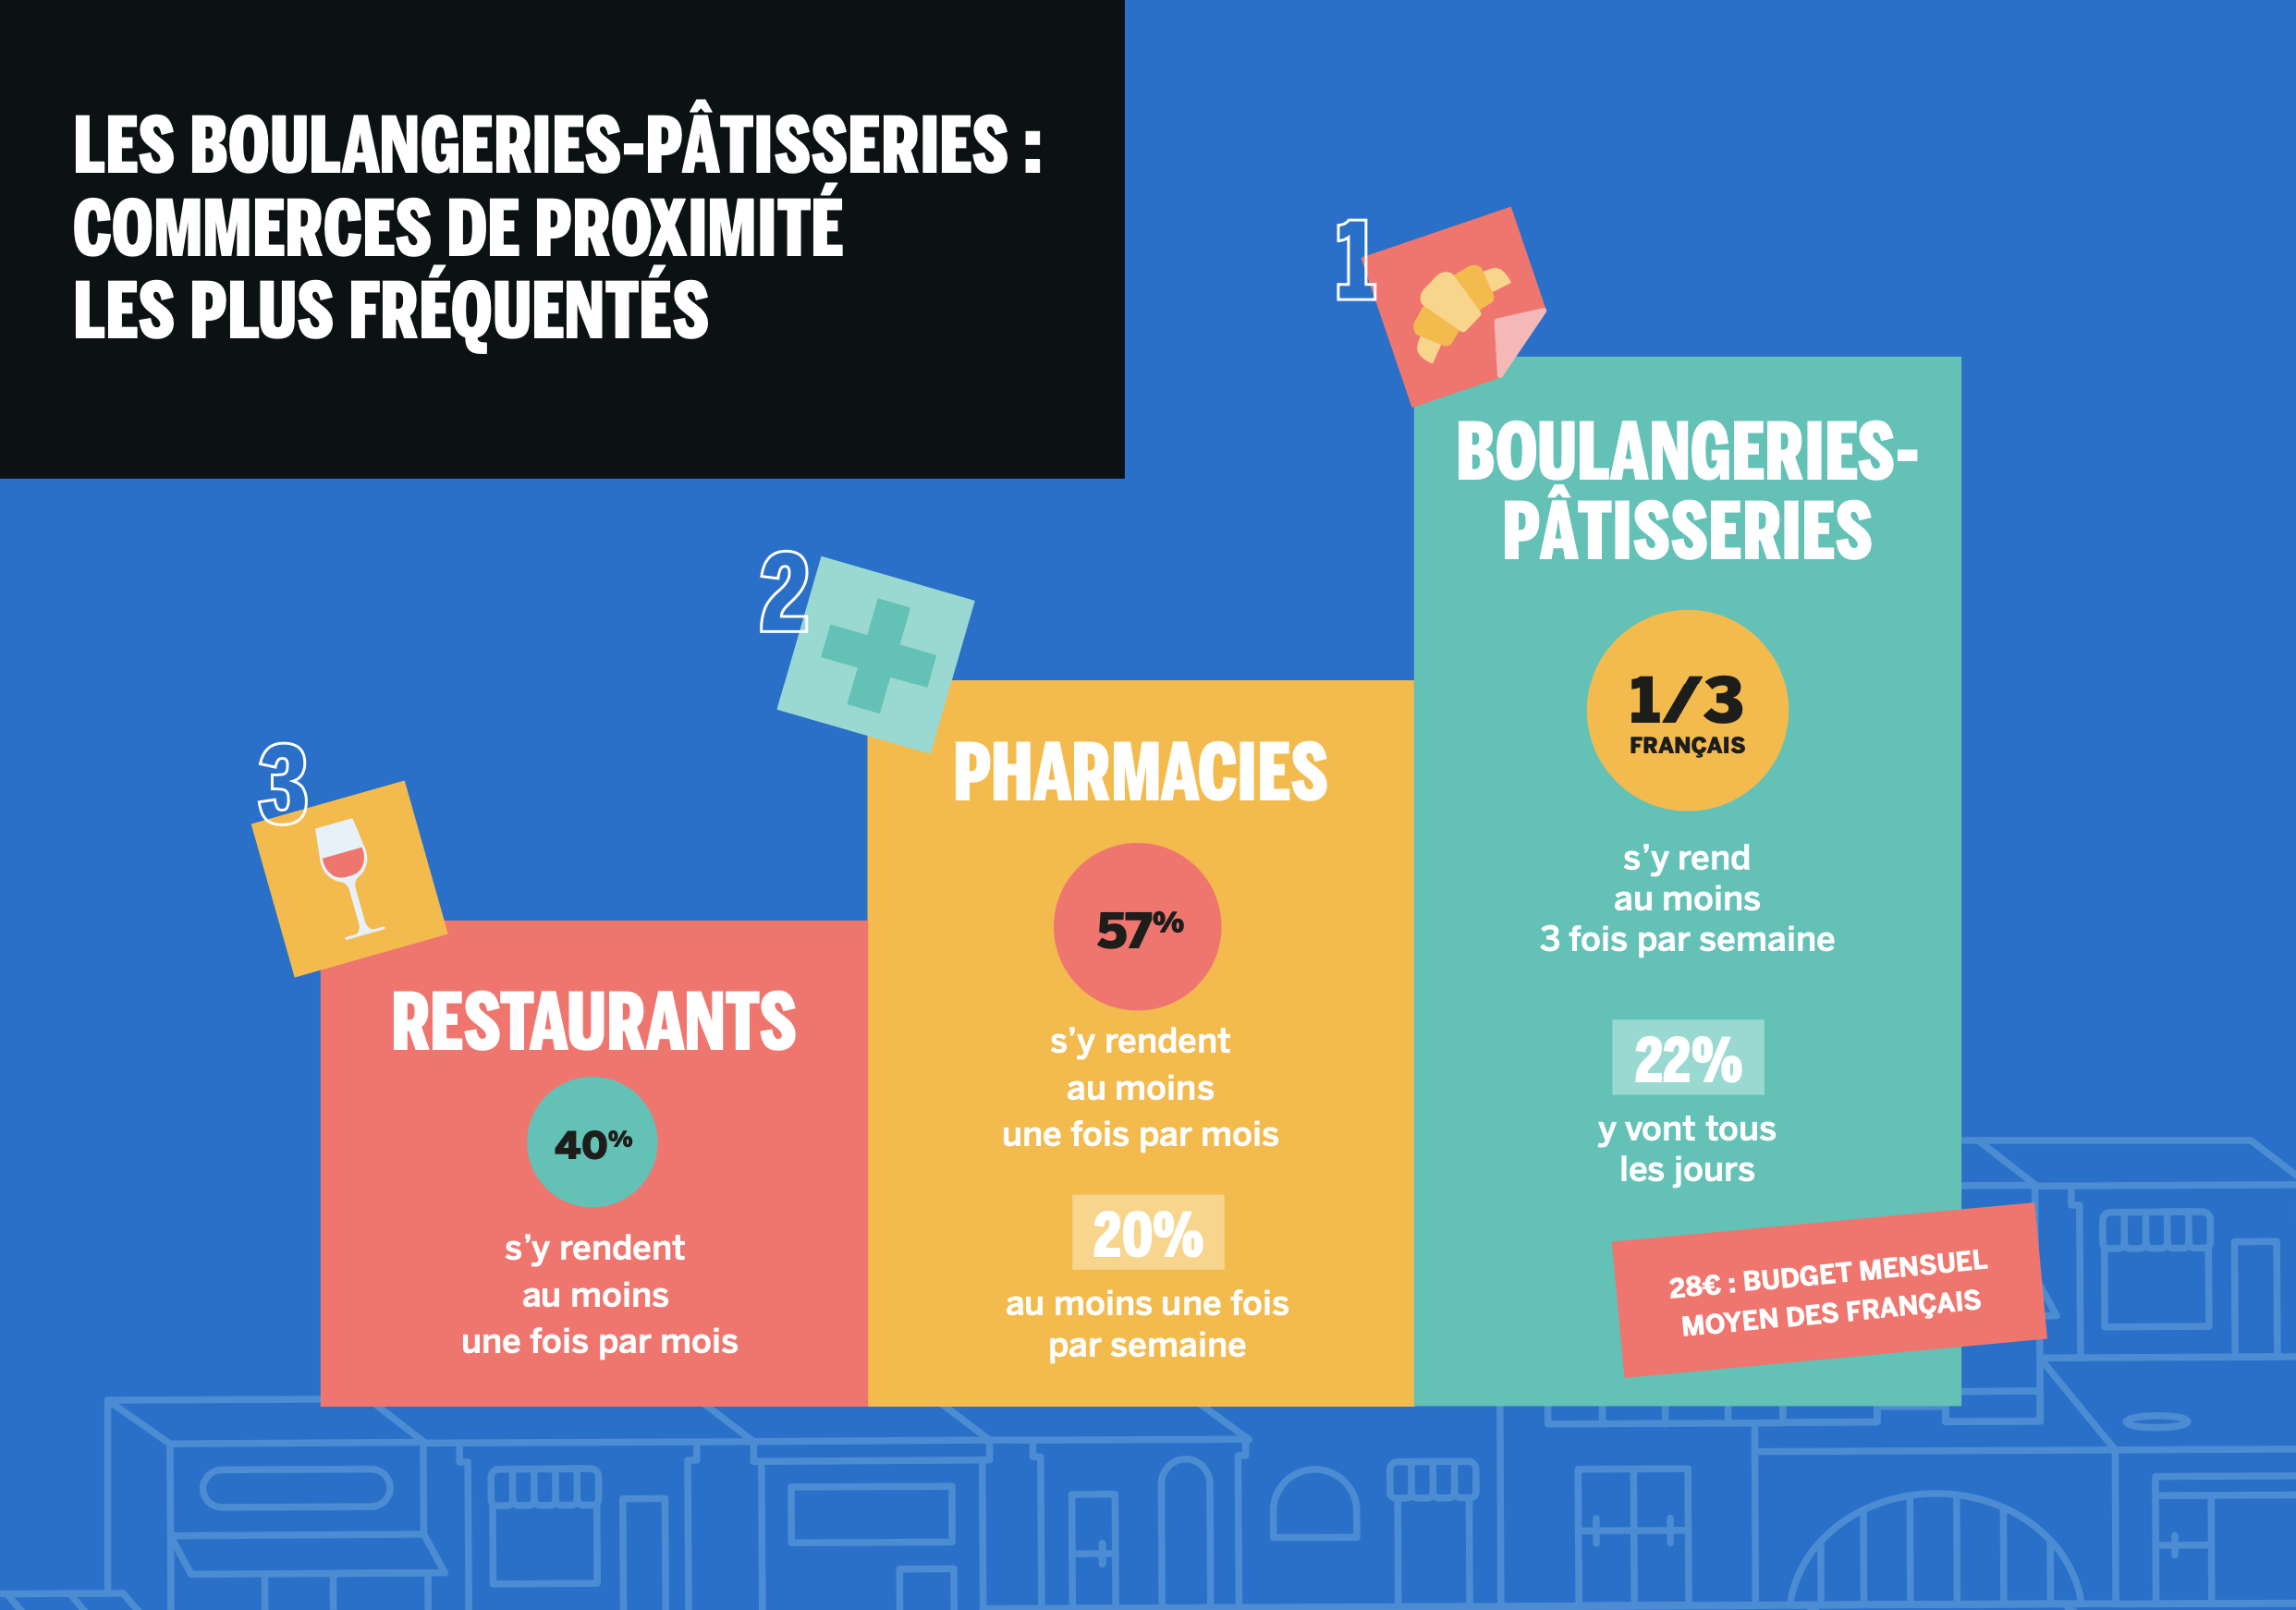 Les boulangeries-pâtisseries toujours en tête des commerces les plus appréciés des Français